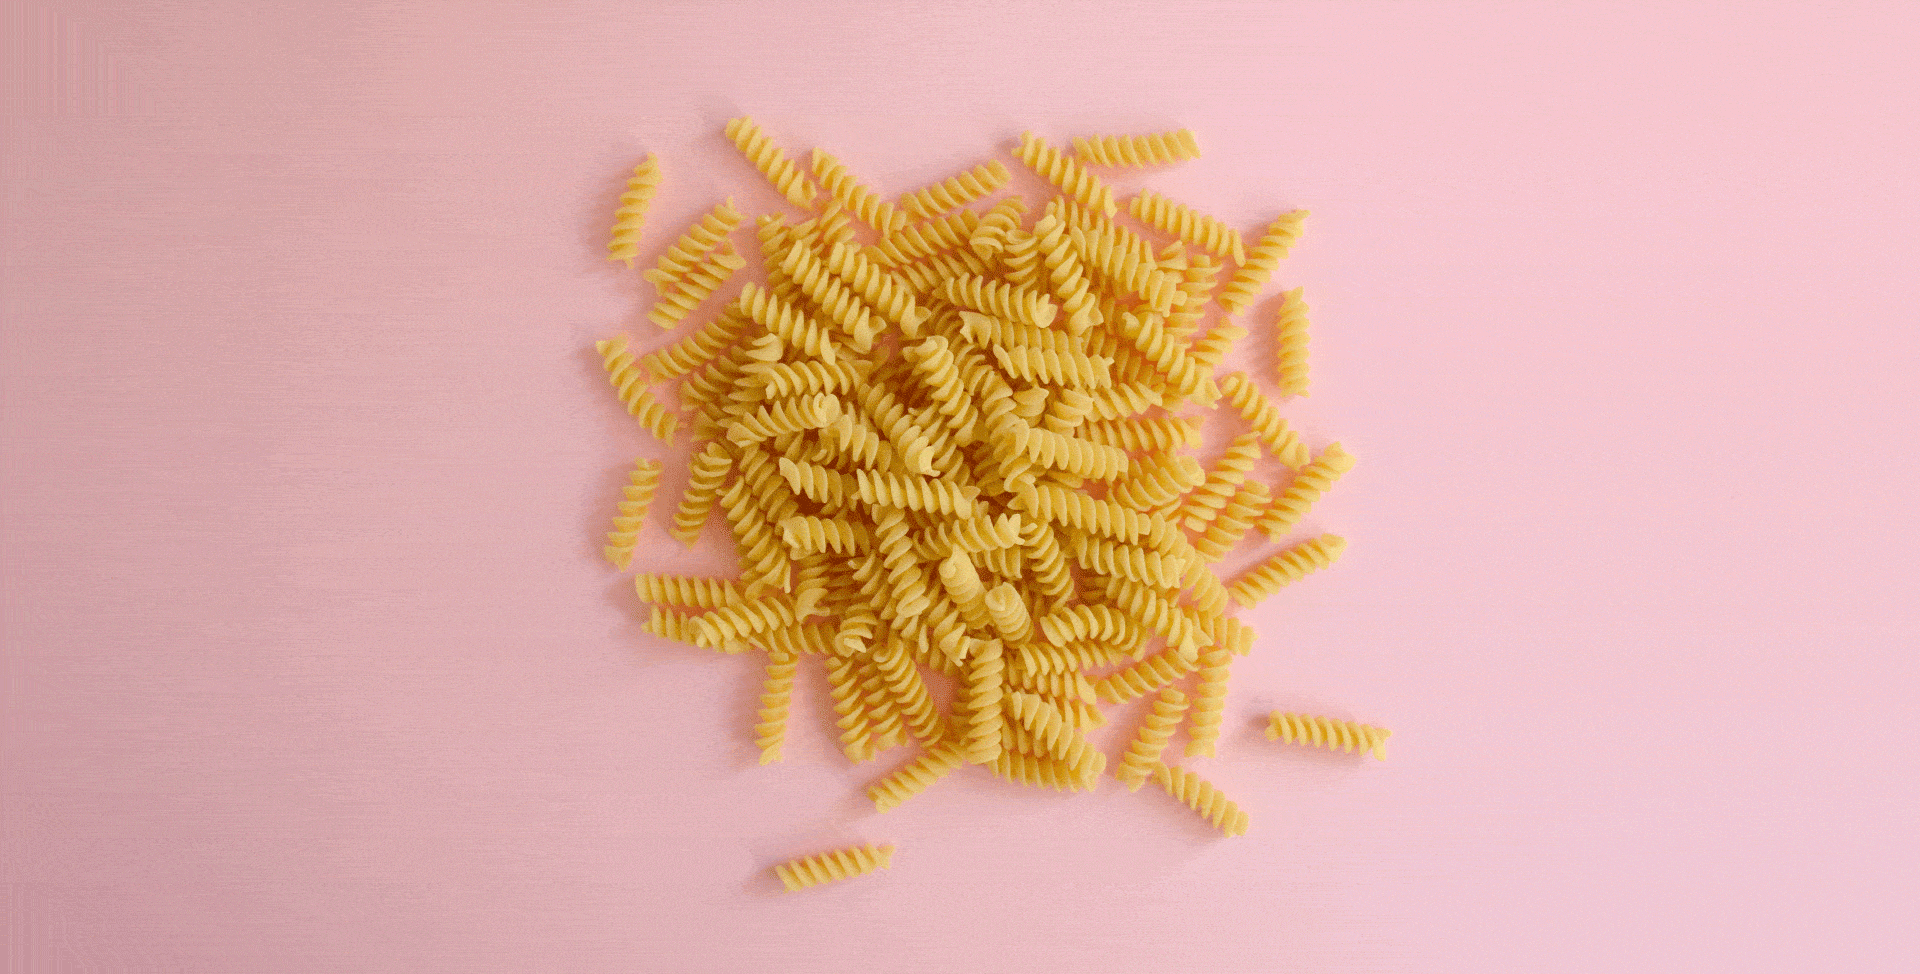 Piles of pasta